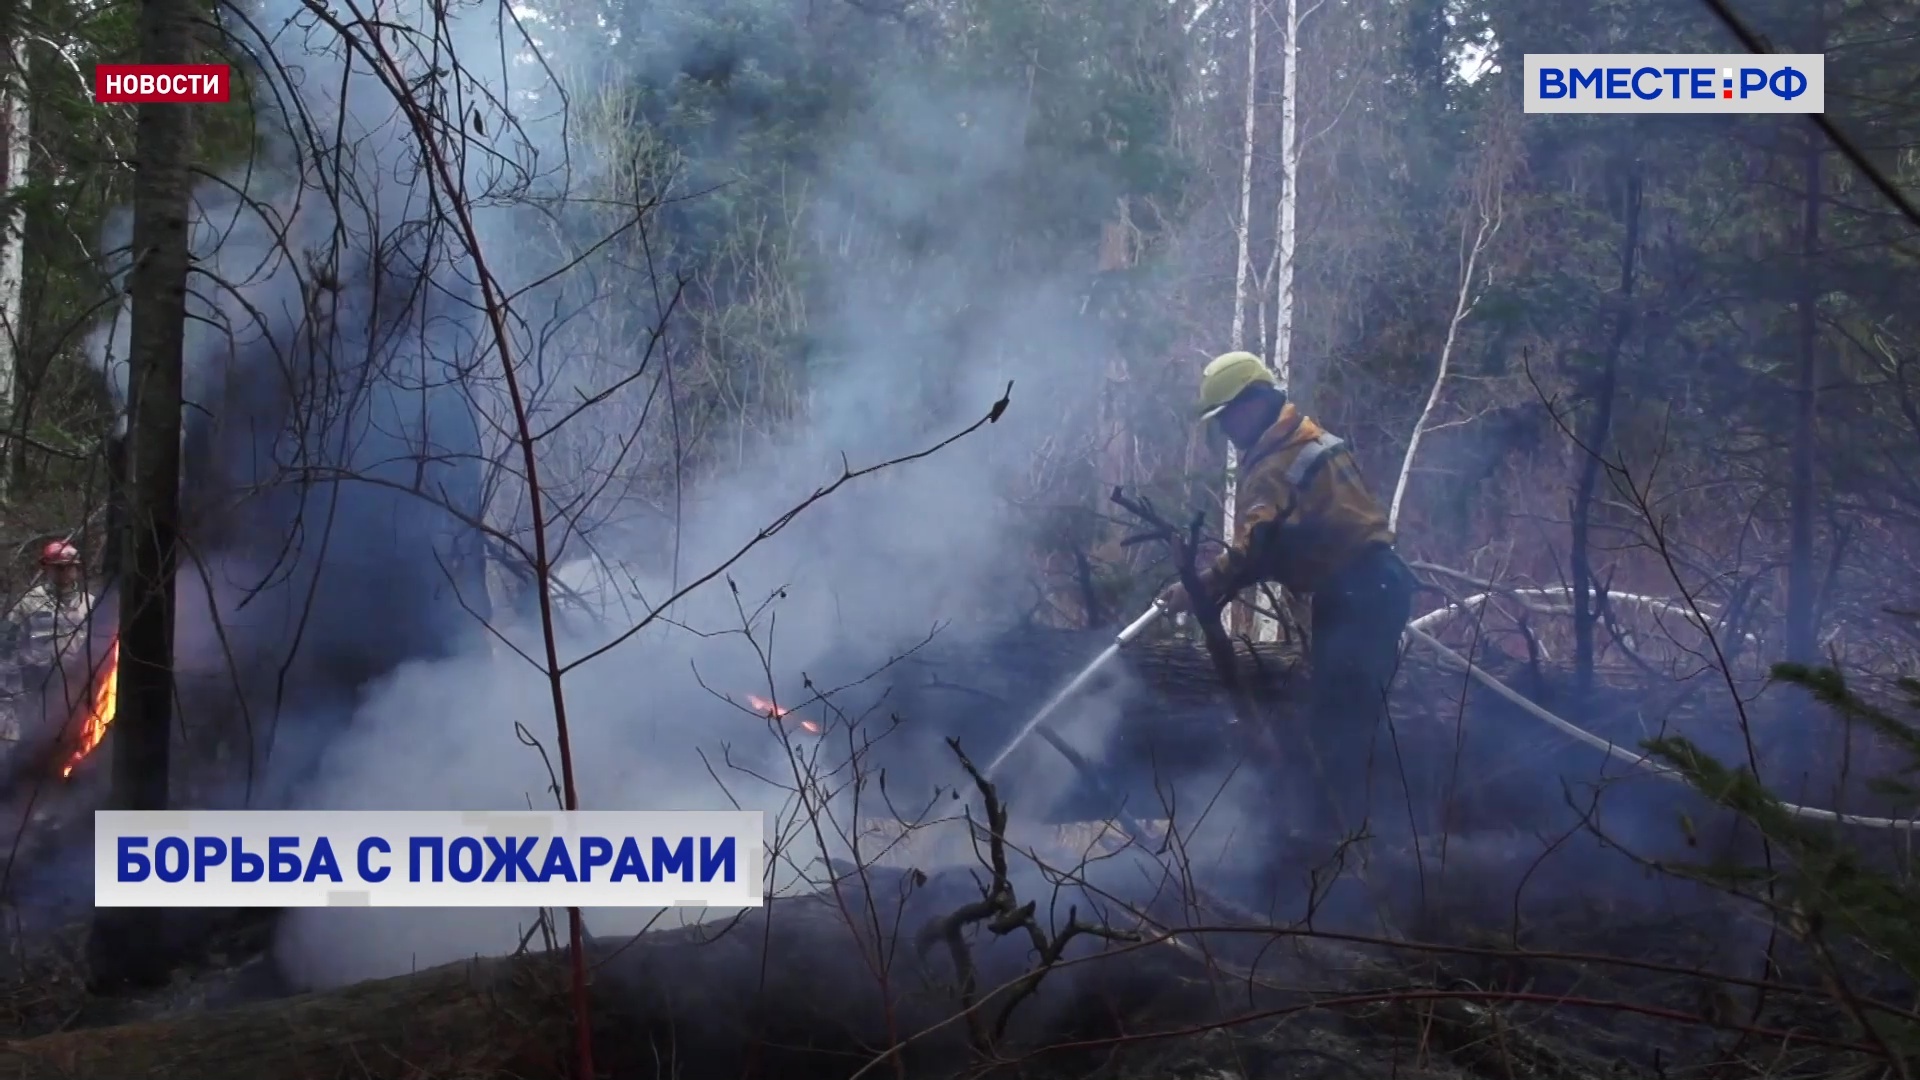 Лесные пожары бушуют в Хабаровском крае, Якутии и Магаданской области